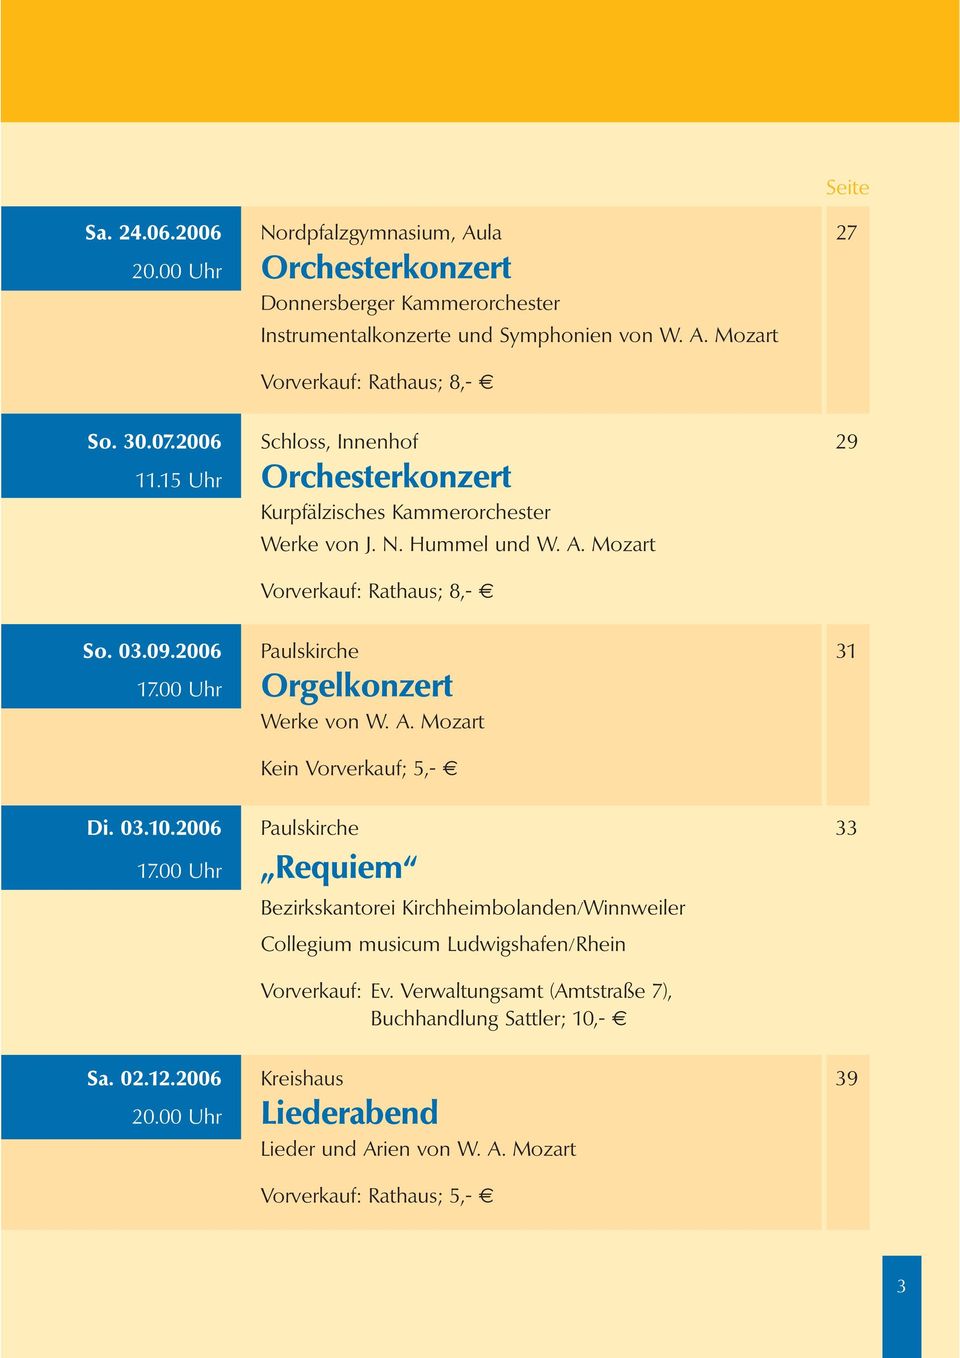 00 Uhr Orgelkonzert Werke von W. A. Mozart Kein Vorverkauf; 5,- Di. 03.10.2006 Paulskirche 33 17.